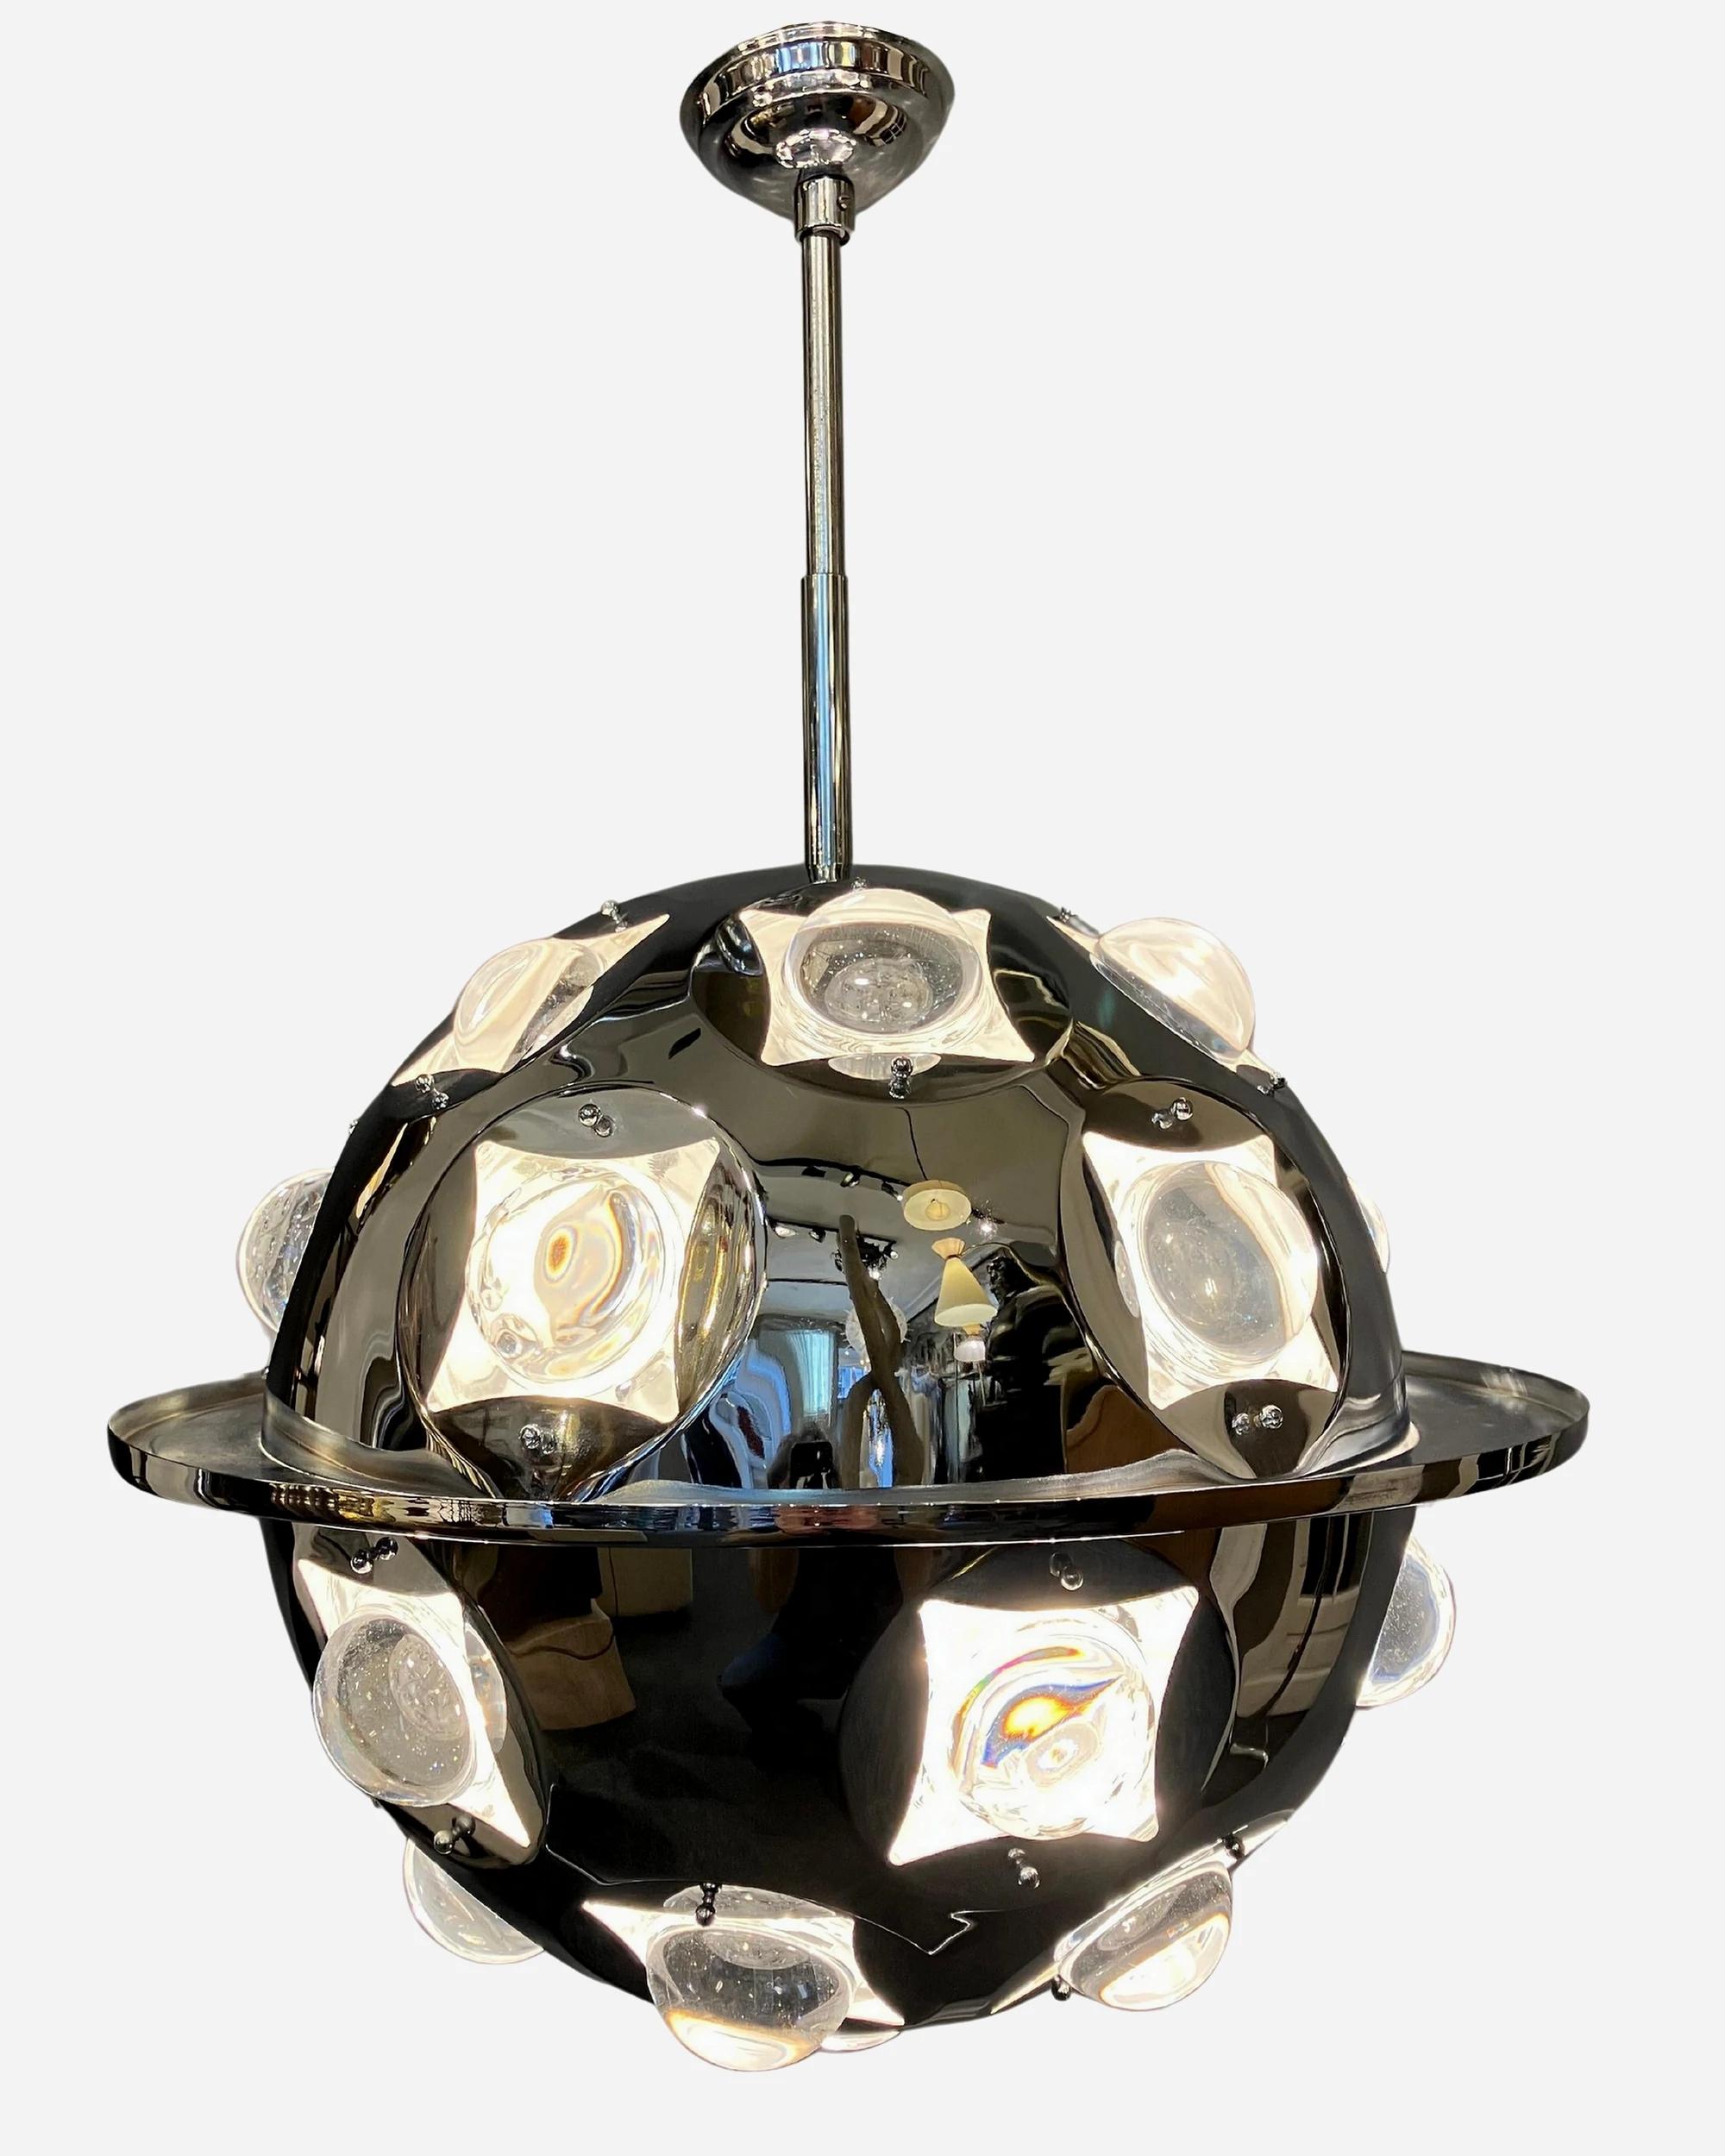 Sputnik-Kronleuchter, entworfen von Oscar Torlasco für LUMI Italien in den 1960er Jahren. Verchromte Struktur mit optischen Glaslinsen, die das Licht in alle Richtungen reflektieren. In sehr gutem Originalzustand.

Der Preis ist für jeden Artikel